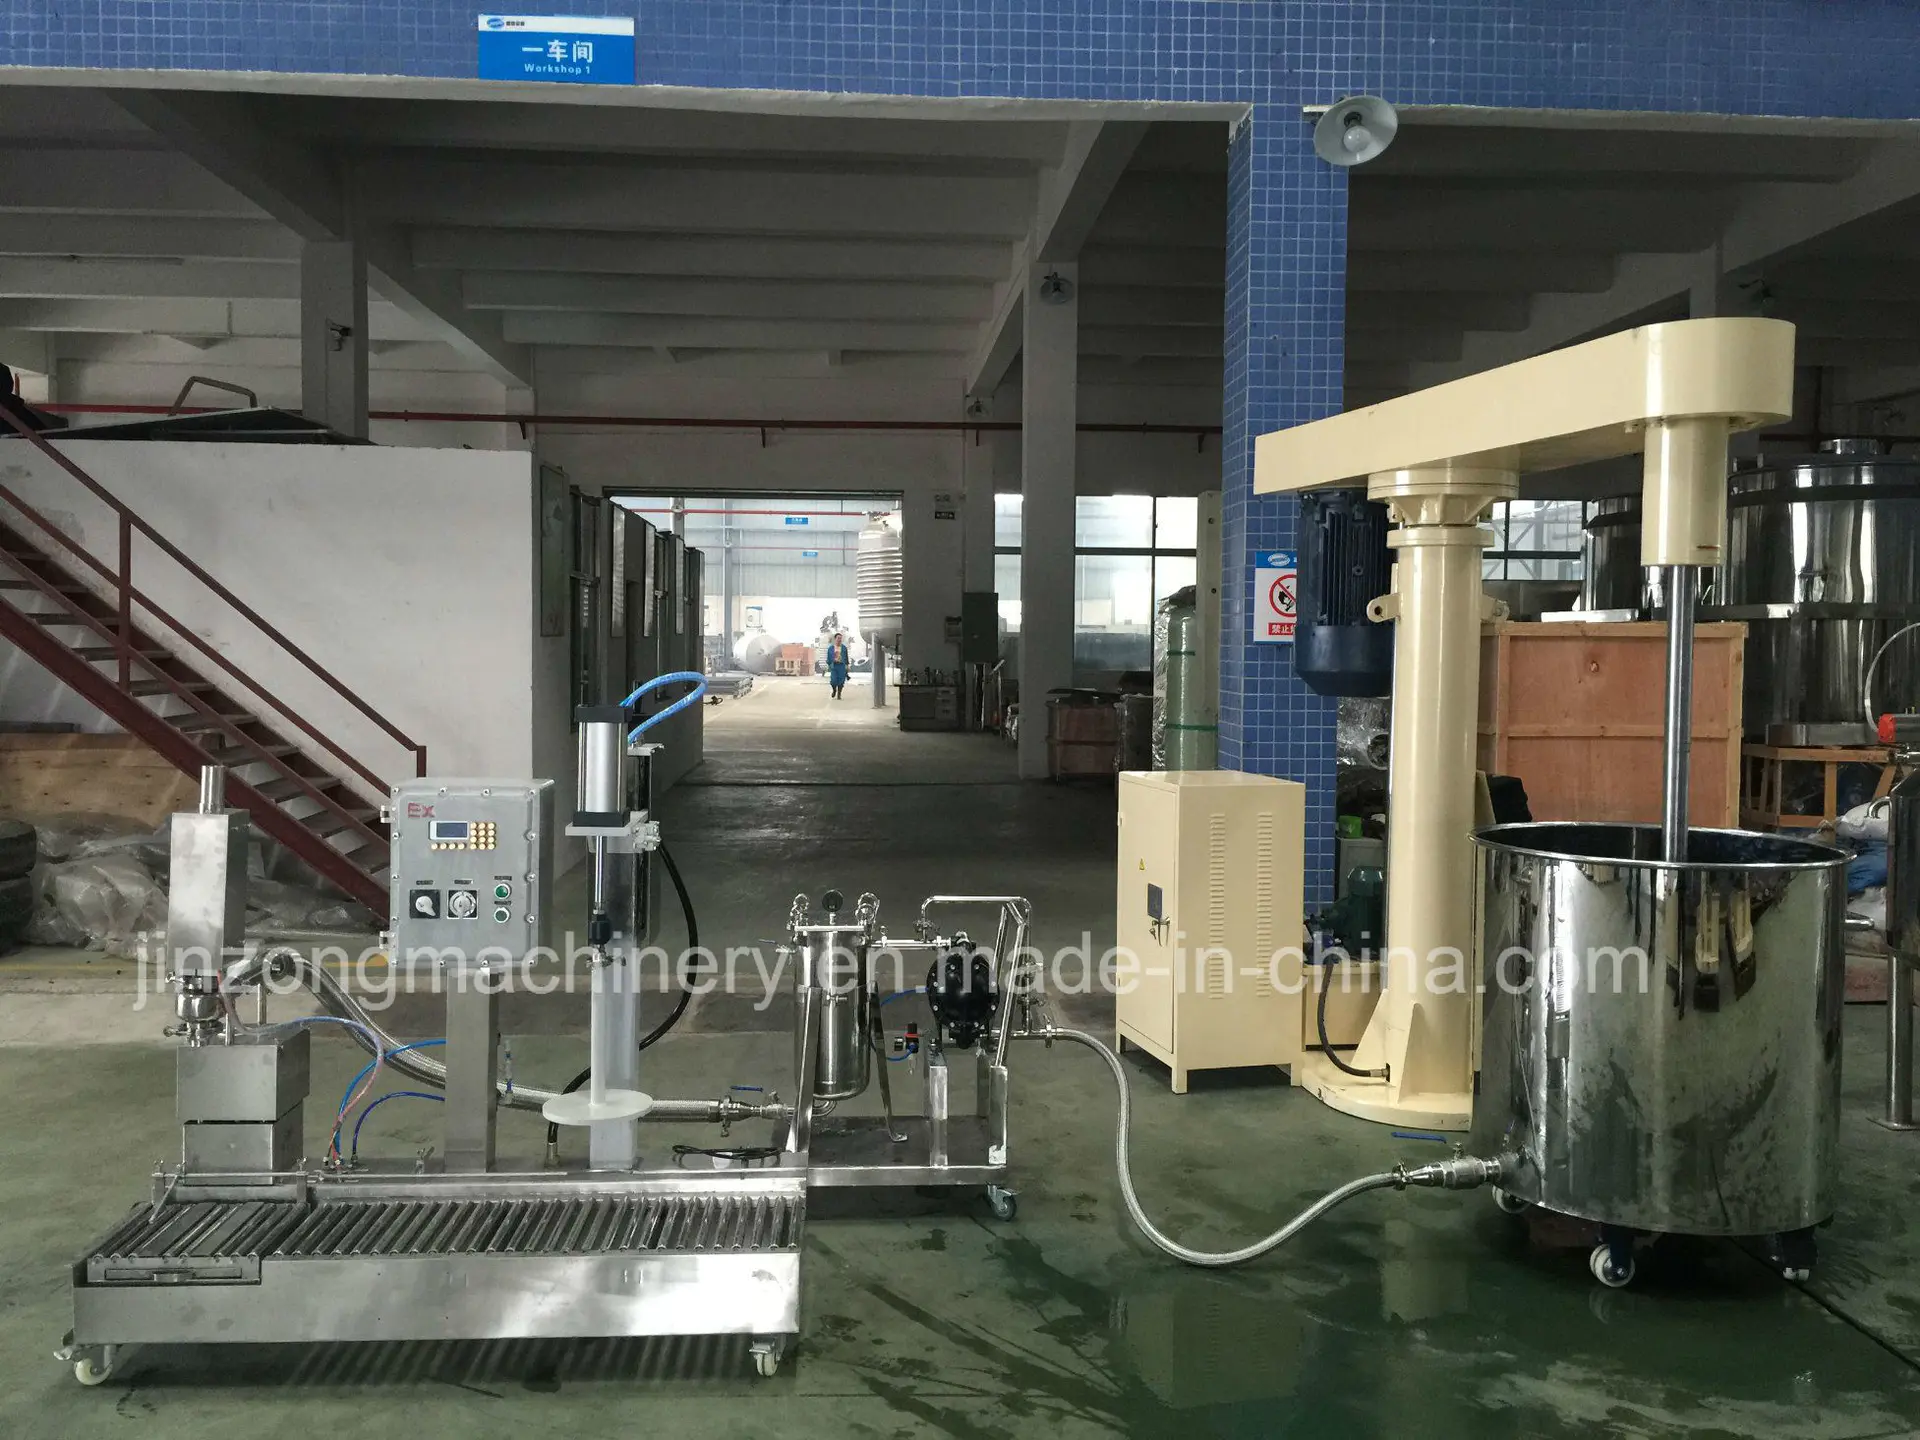 China Paint Mixer Making Machine Equipment